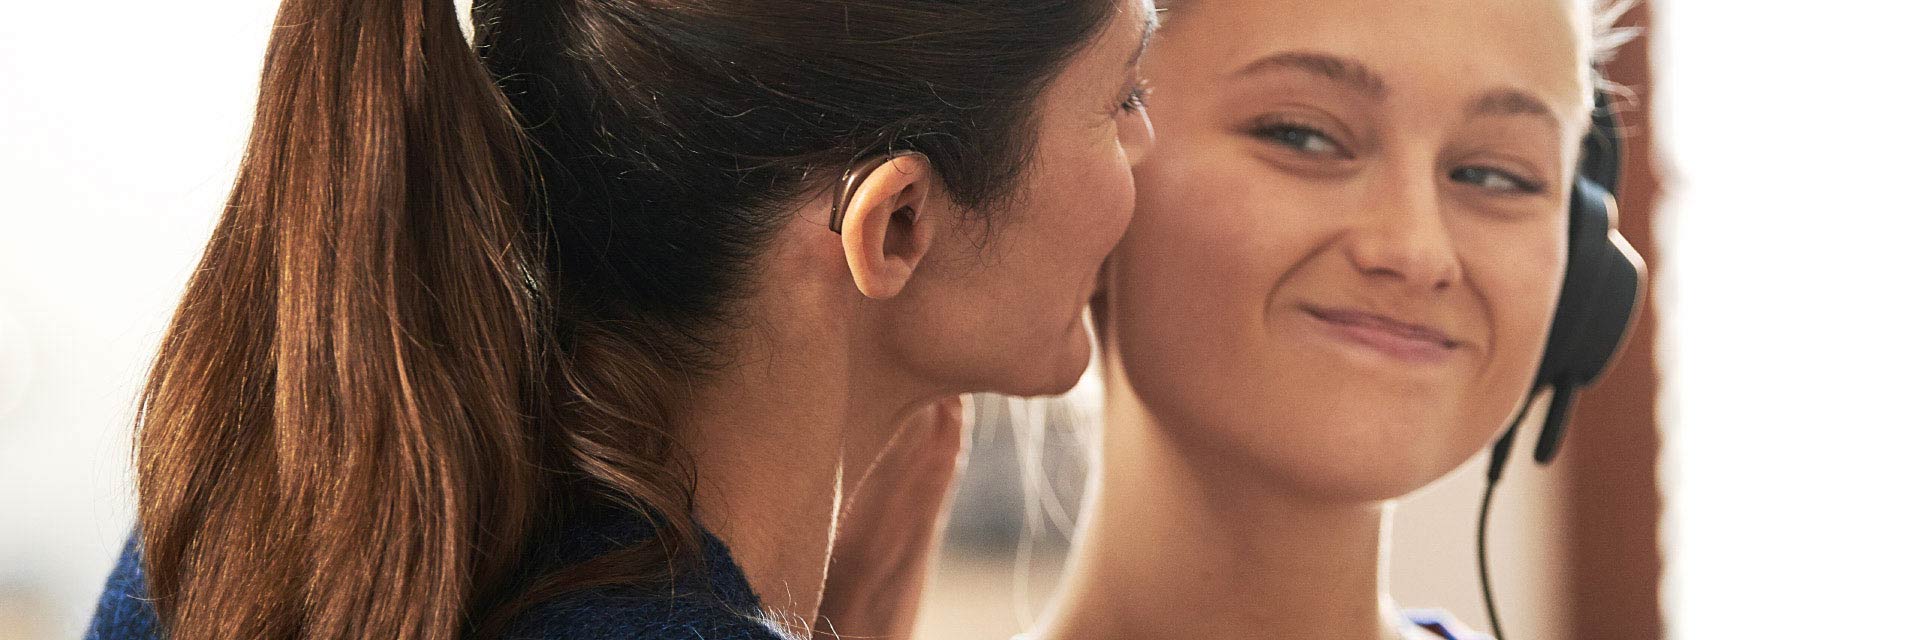 Afbeelding van vrouw met gehoorapparaat in haar oor en meisje die naar elkaar glimlachen 